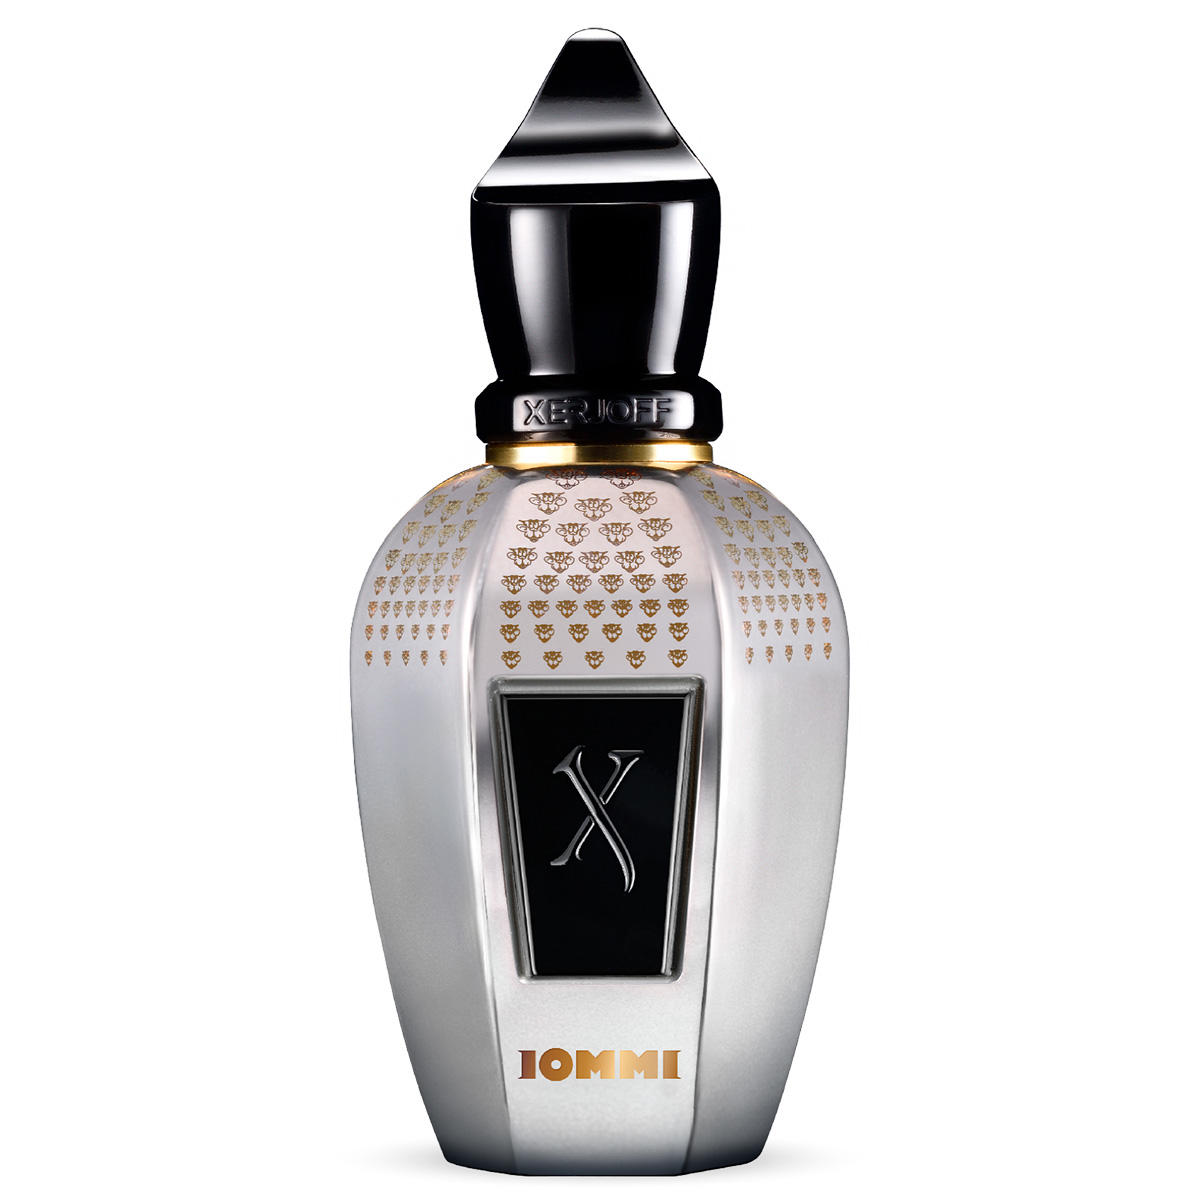 XERJOFF Blends TONY IOMMI MONKEY SPECIAL Parfum  - 1